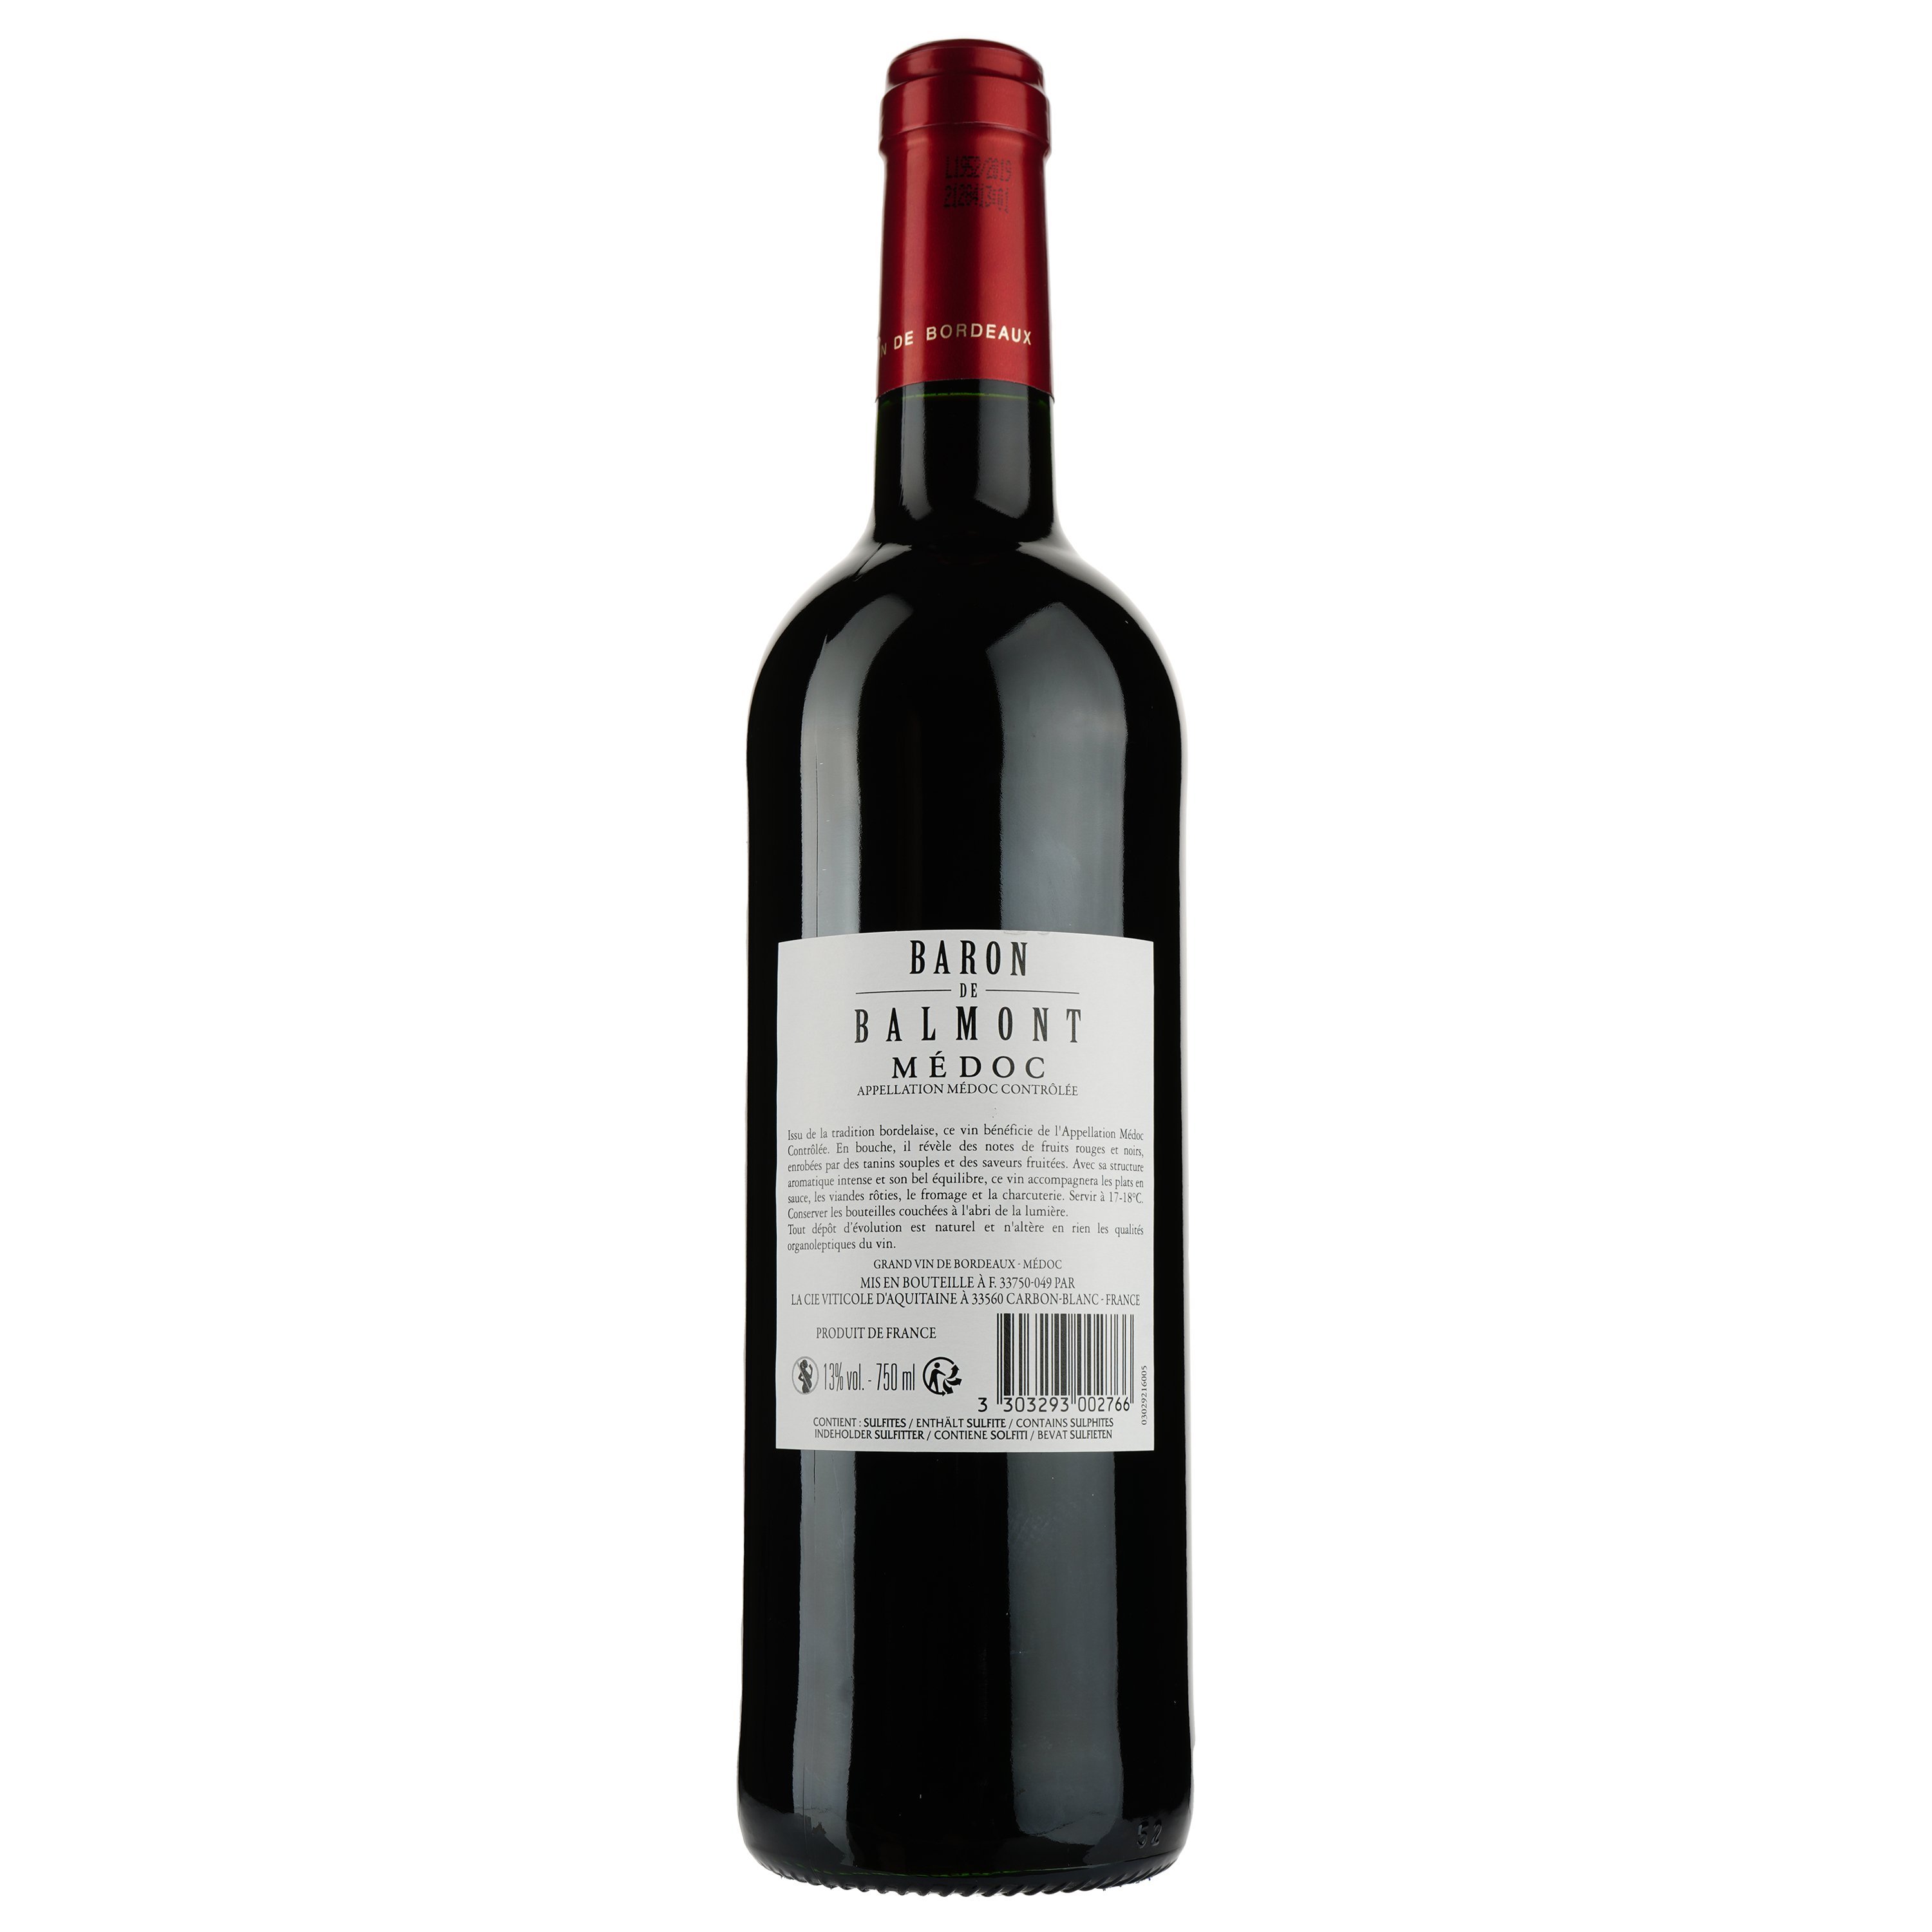 Вино Baron de Balmont AOP Medoc 2016, красное, сухое, 0,75 л - фото 2